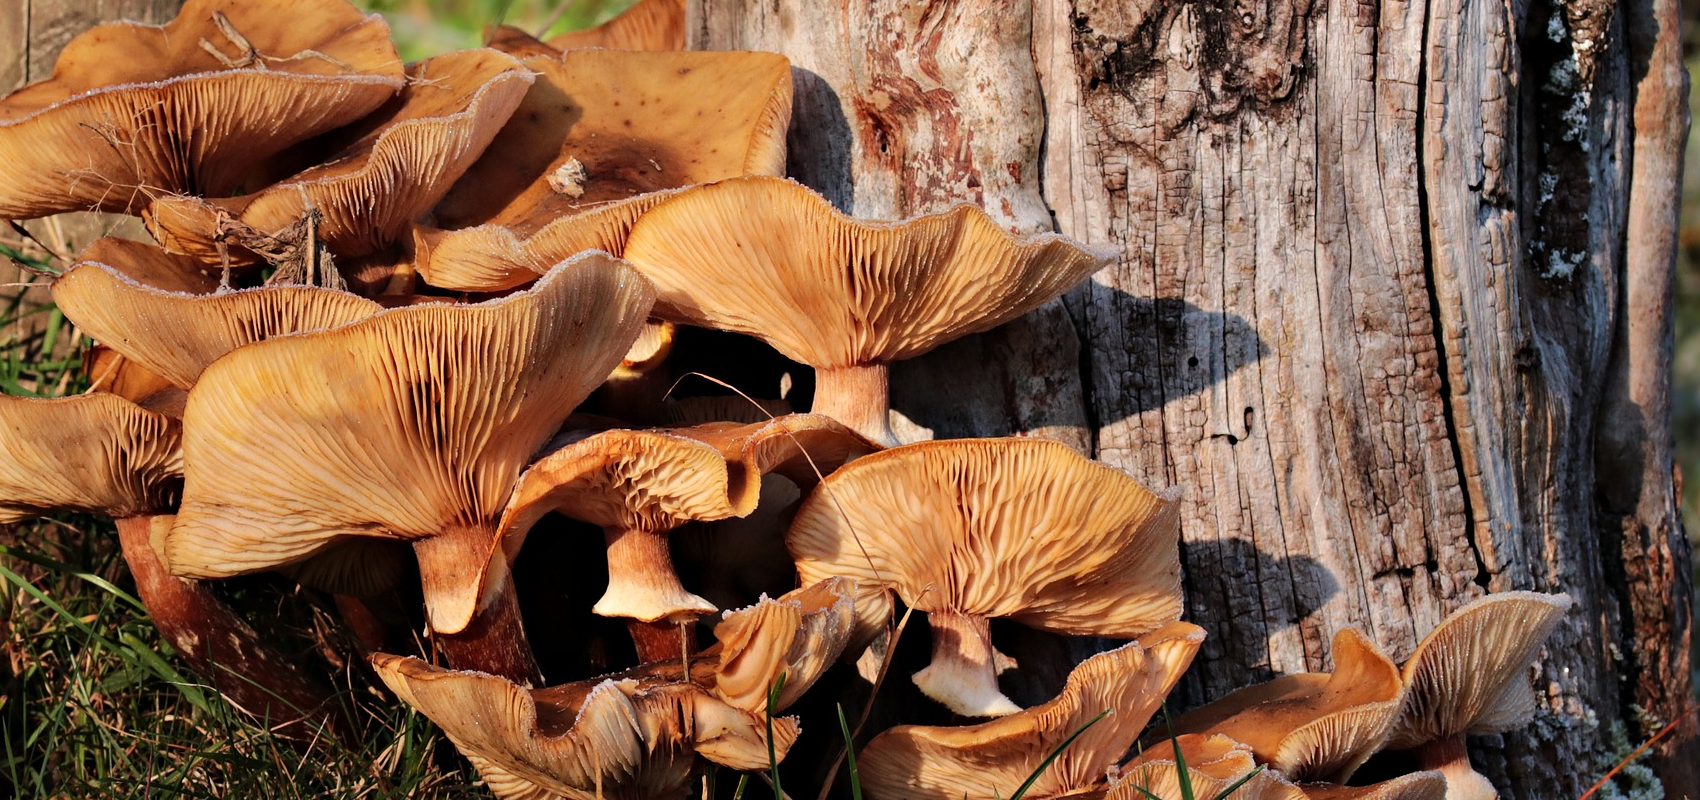 Dlaczego niektóre gatunki grzybów rosną grupami?